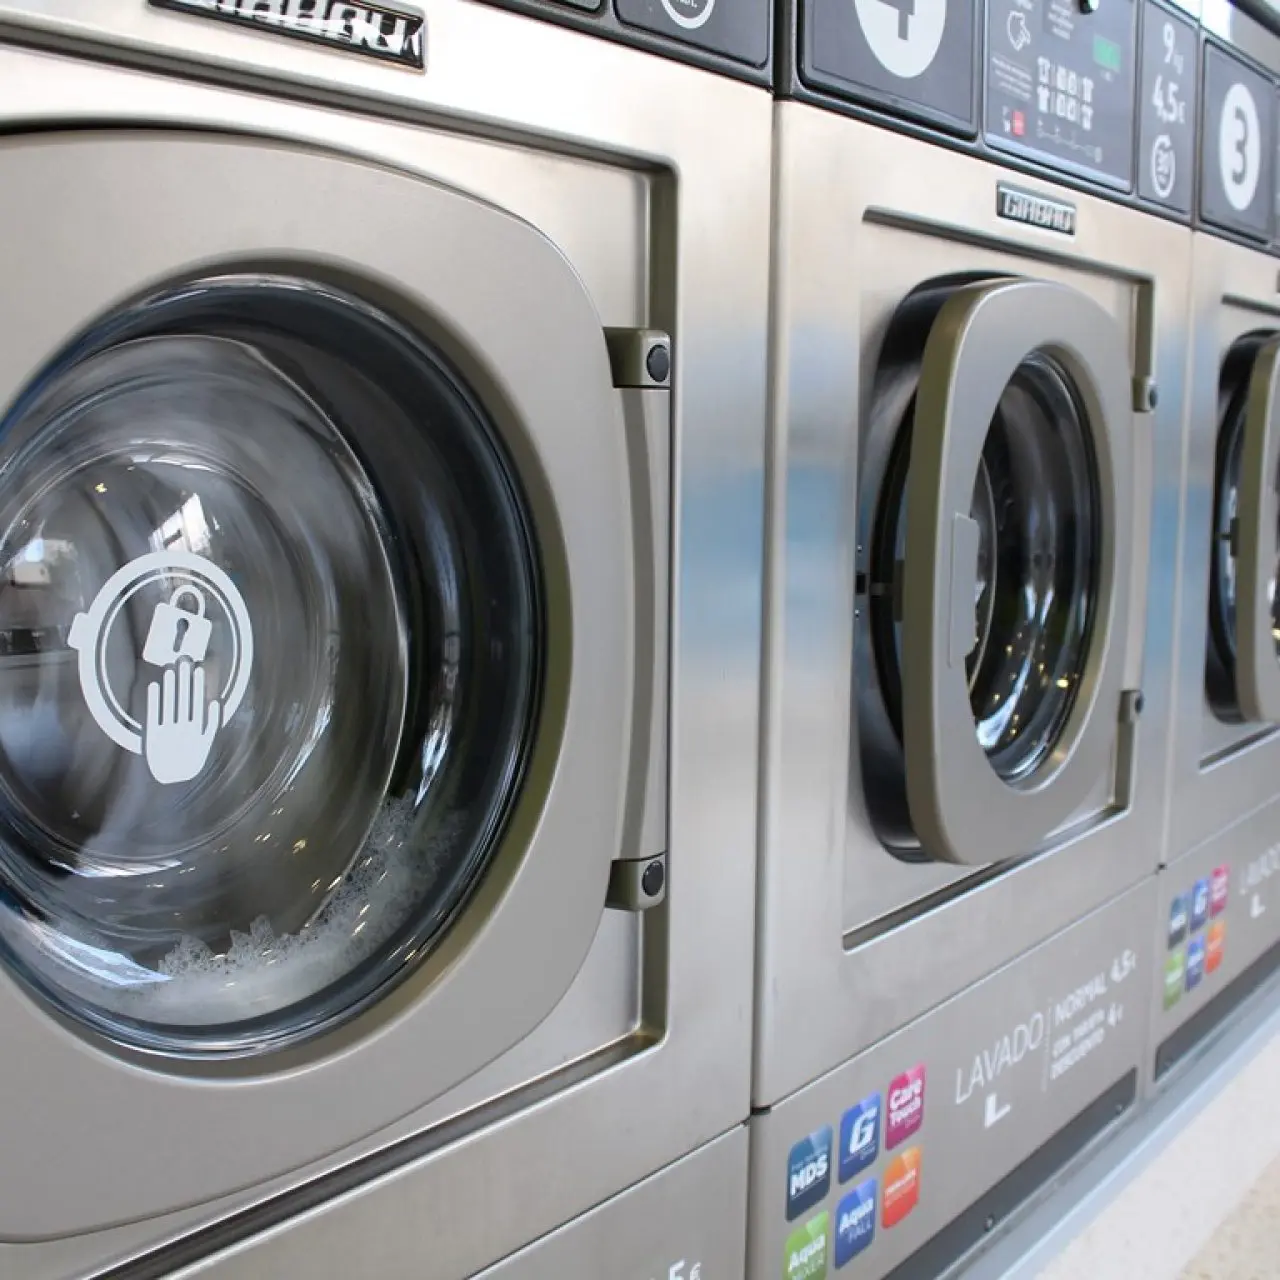 amortizacion lavadora - Cuándo se empieza a amortizar una máquina